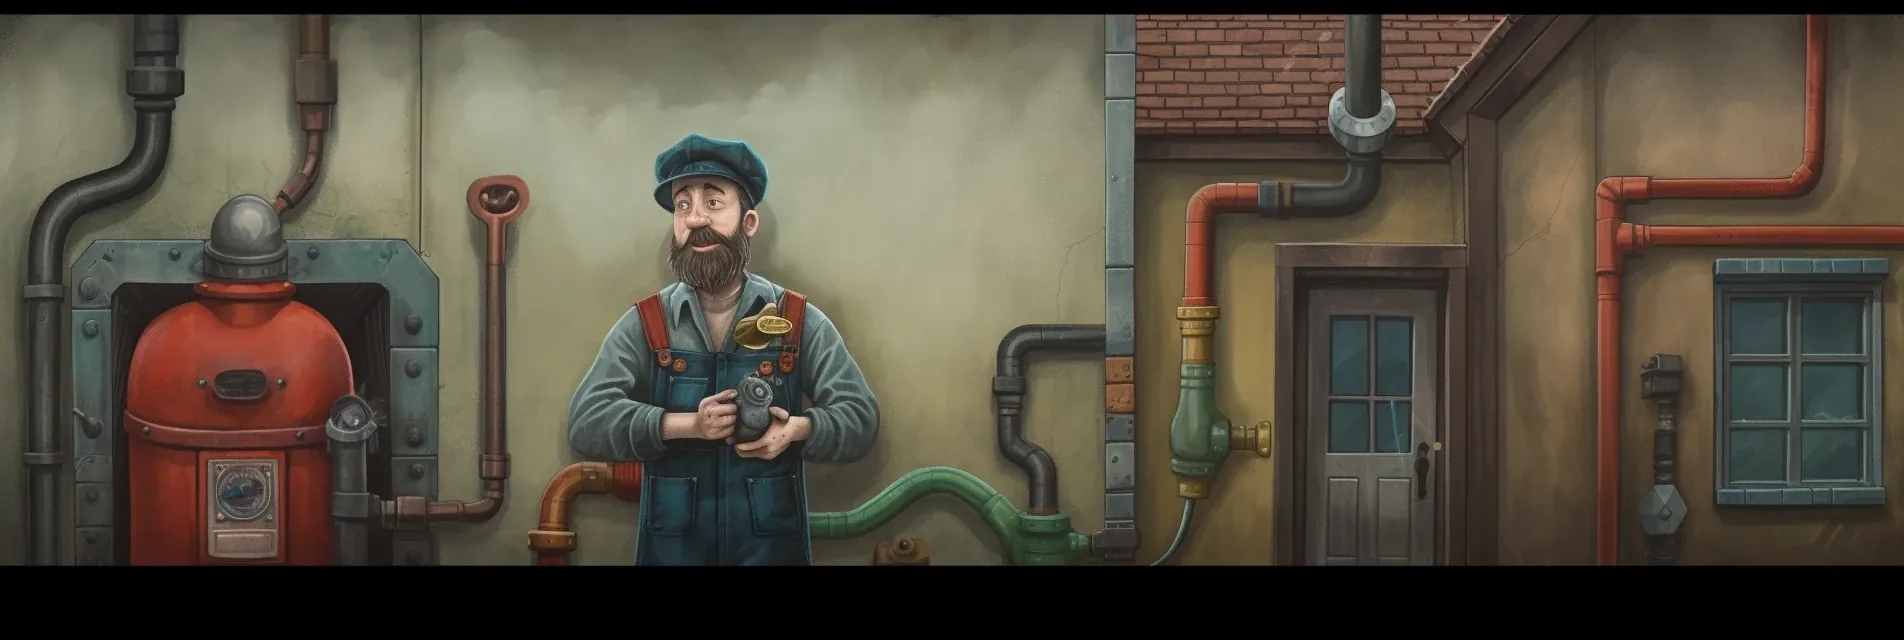 plumber and boiler